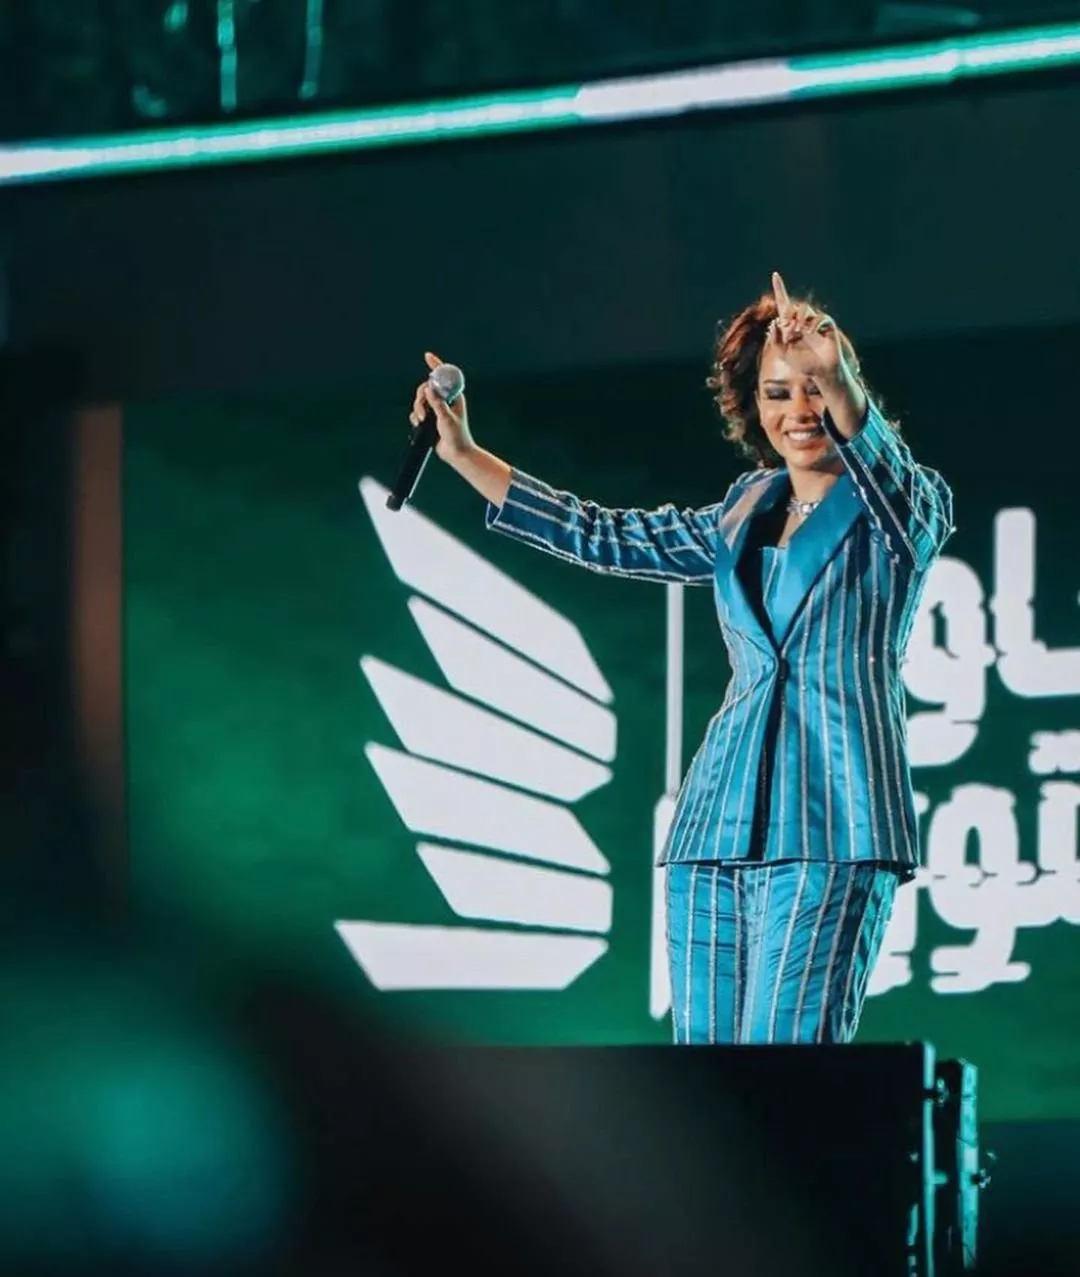 بلقيس فتحي بلوك مرح وشبابي في اليوم الثاني من مهرجان مدل بيست 2021 في السعودية